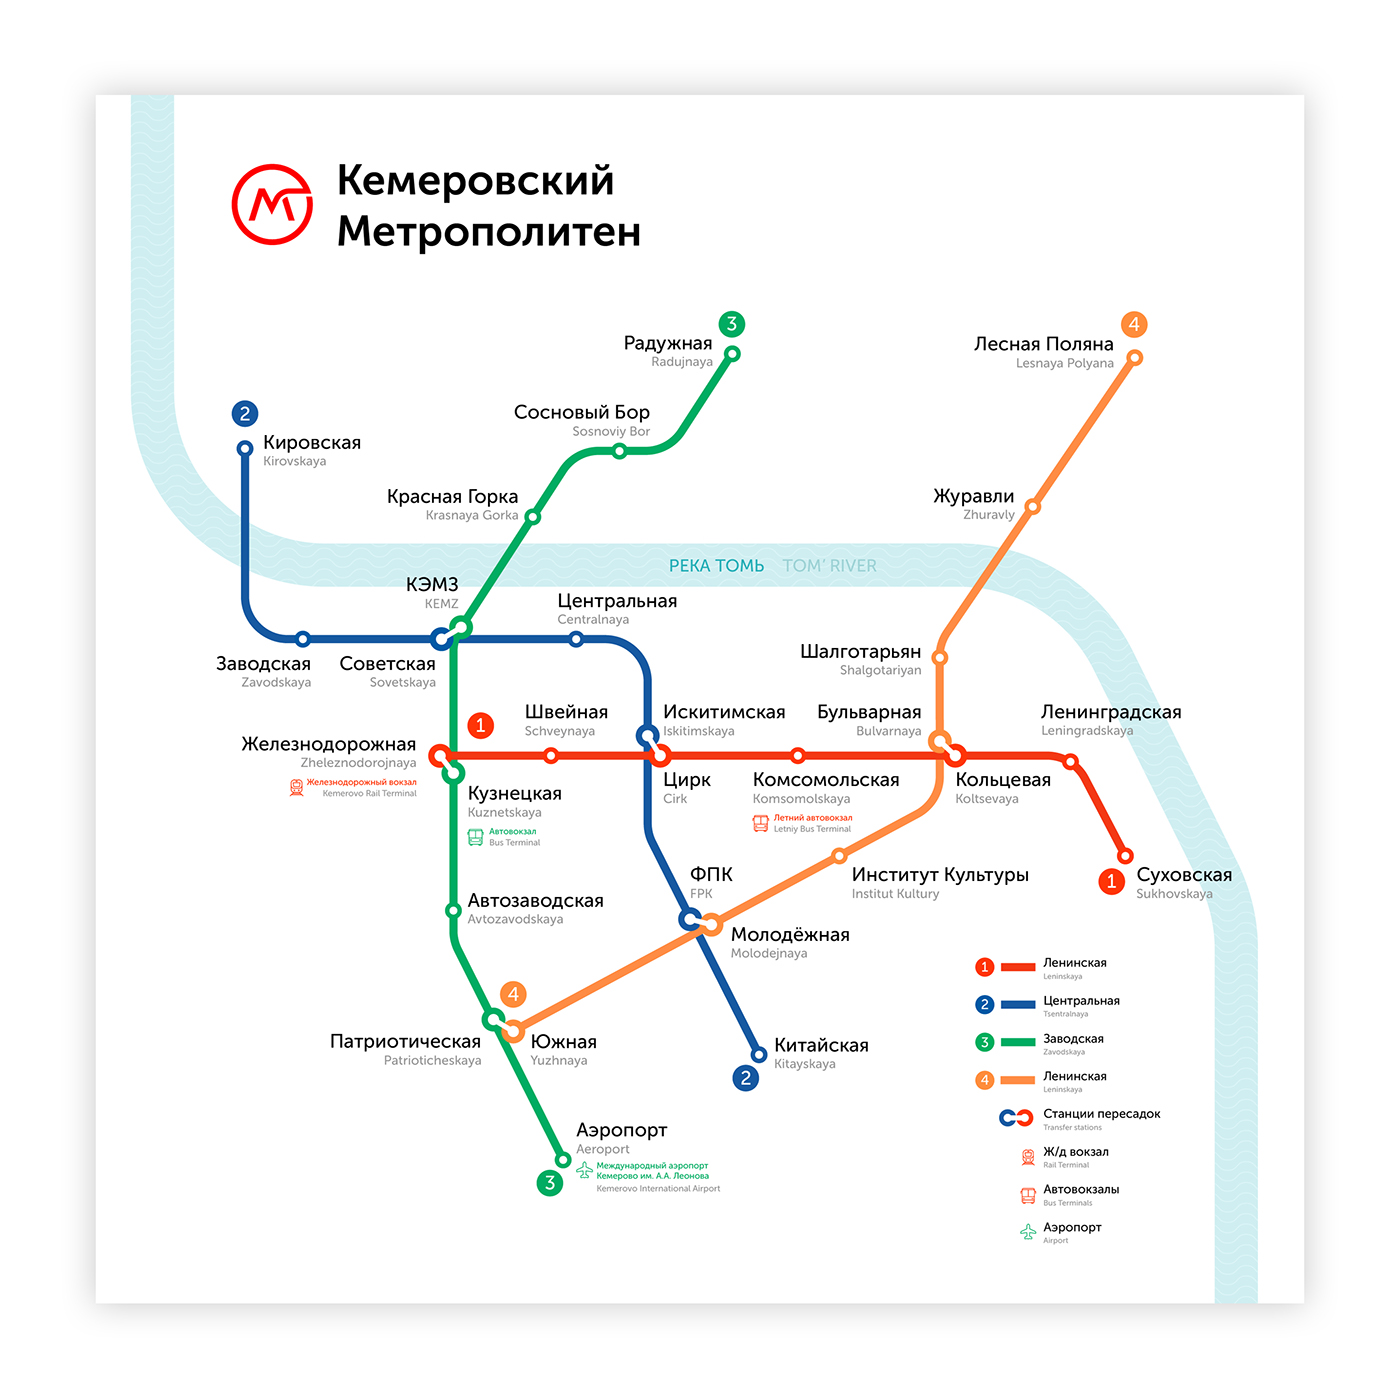 Kemerovo Russia subway metro map navigation underground